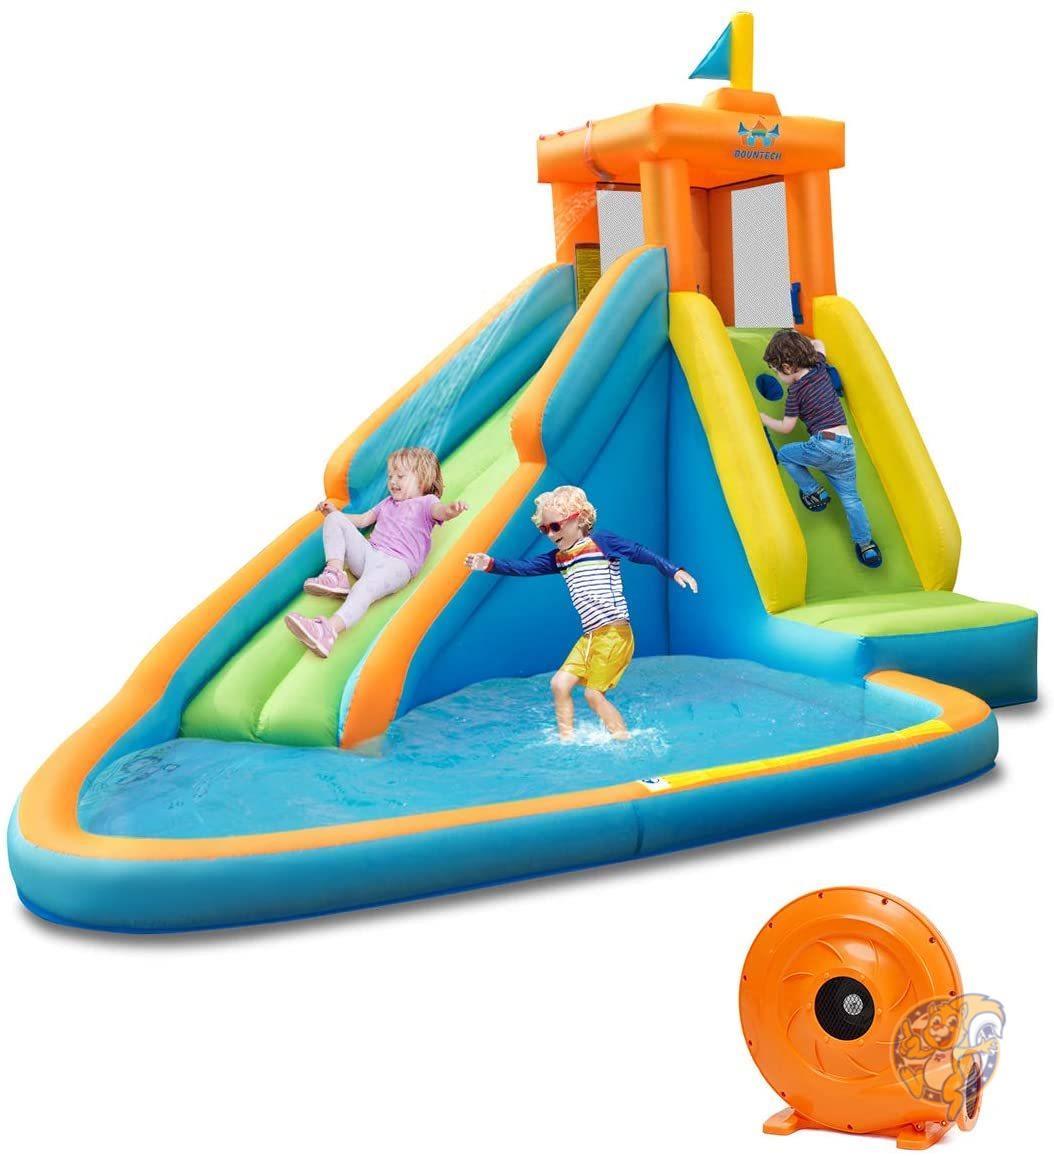 滑り台付き 大型プール バウンテック 水遊び インフレータブル ウォータースライド 大型プール BOUNTECH 家庭用プール ウォーターパーク アメリカおもちゃ 海外玩具